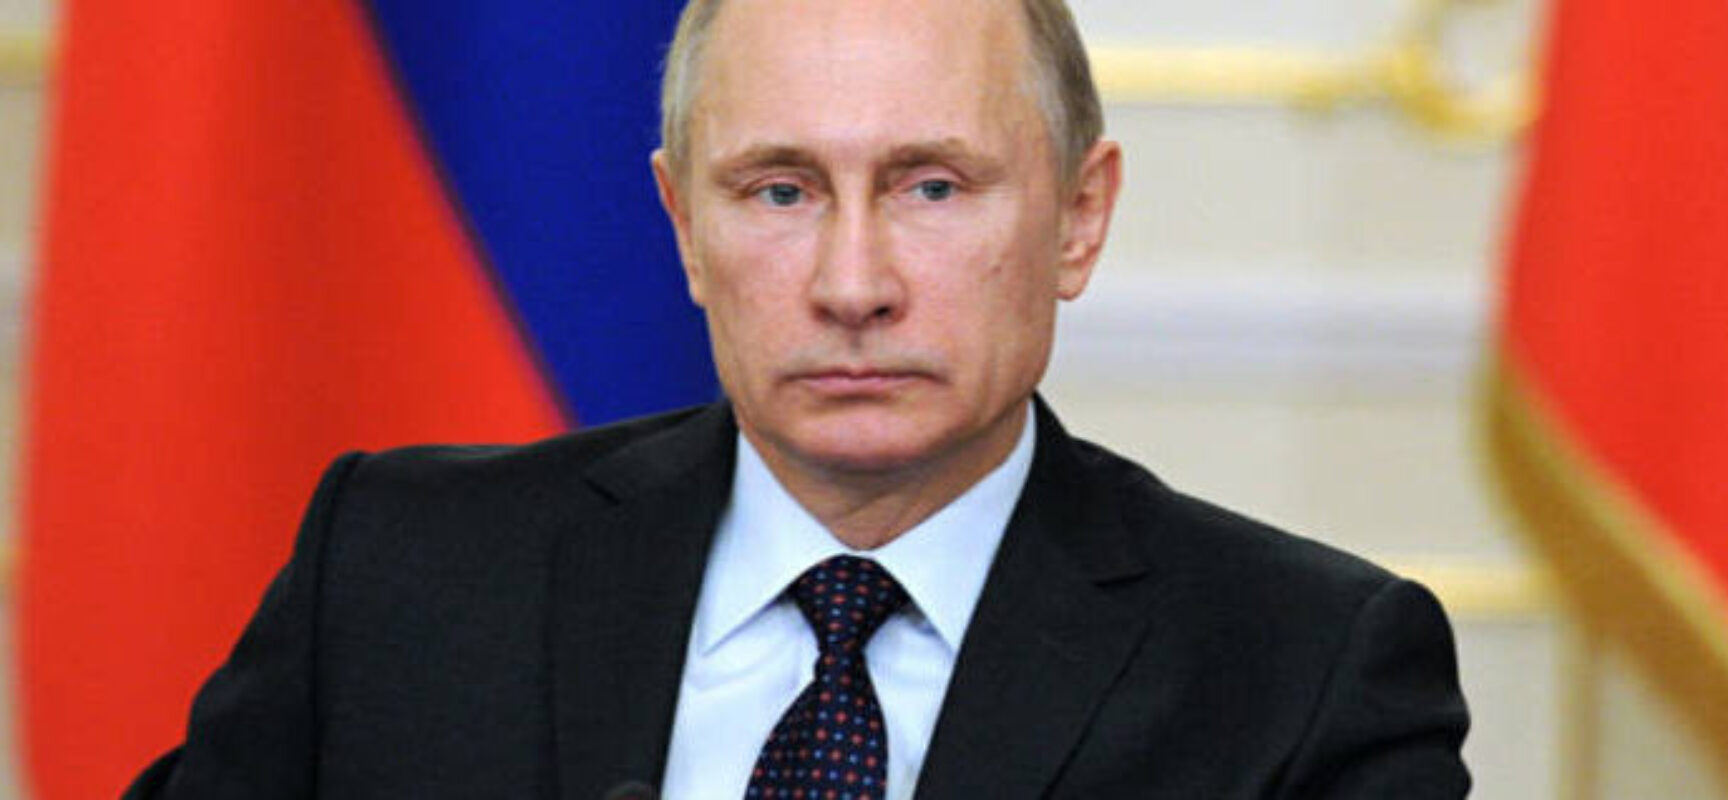 Putin chama combates na Ucrânia de “guerra” pela primeira vez